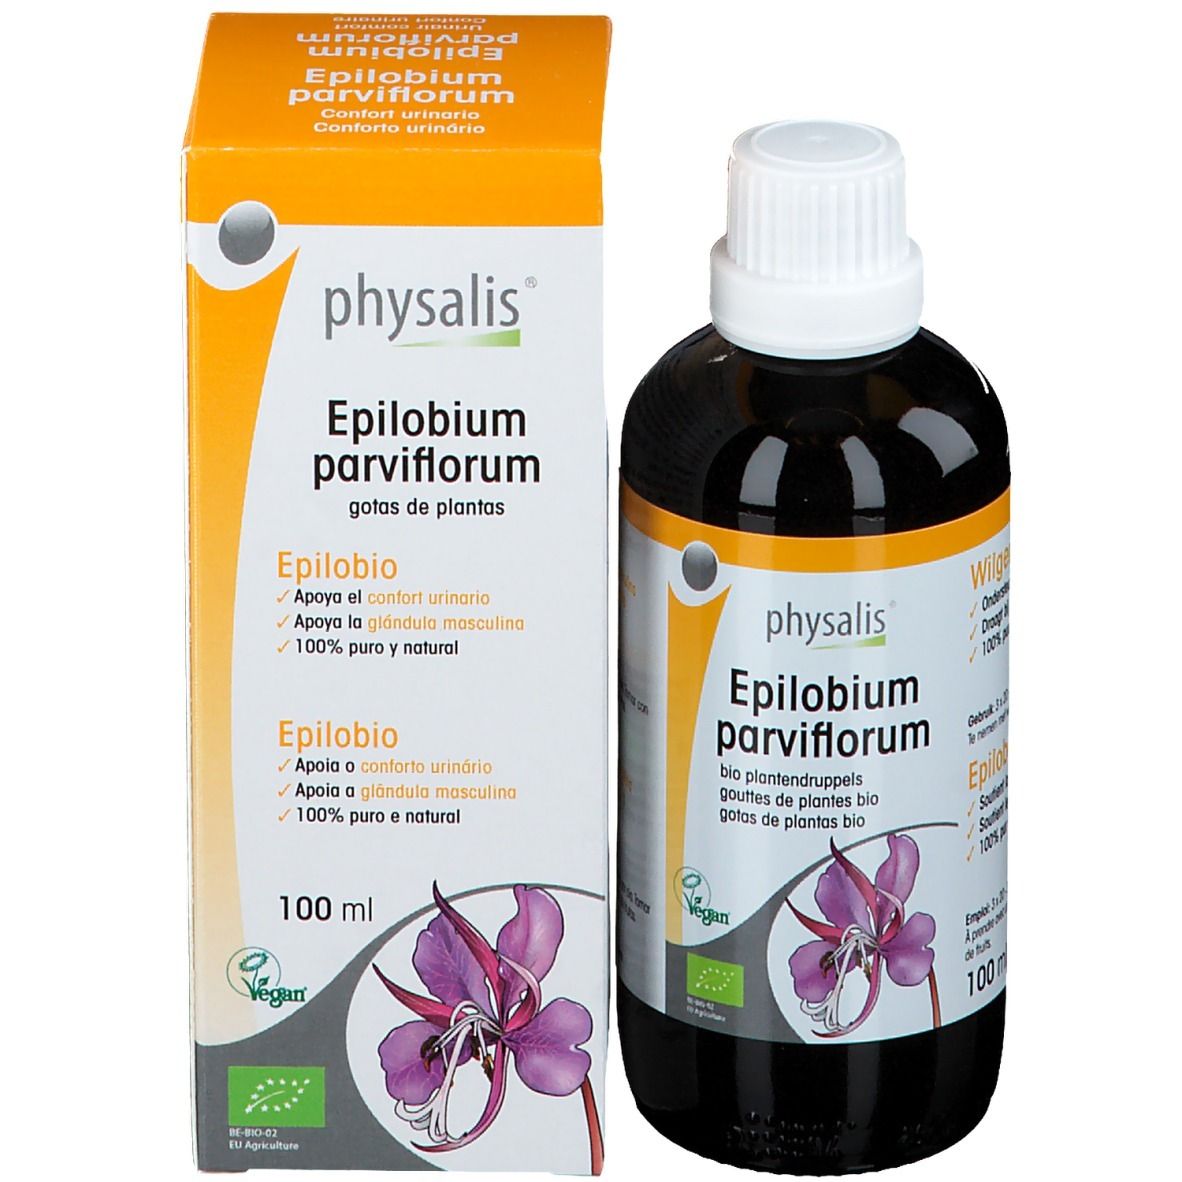 Physalis Epilobium Parviflorum Bio